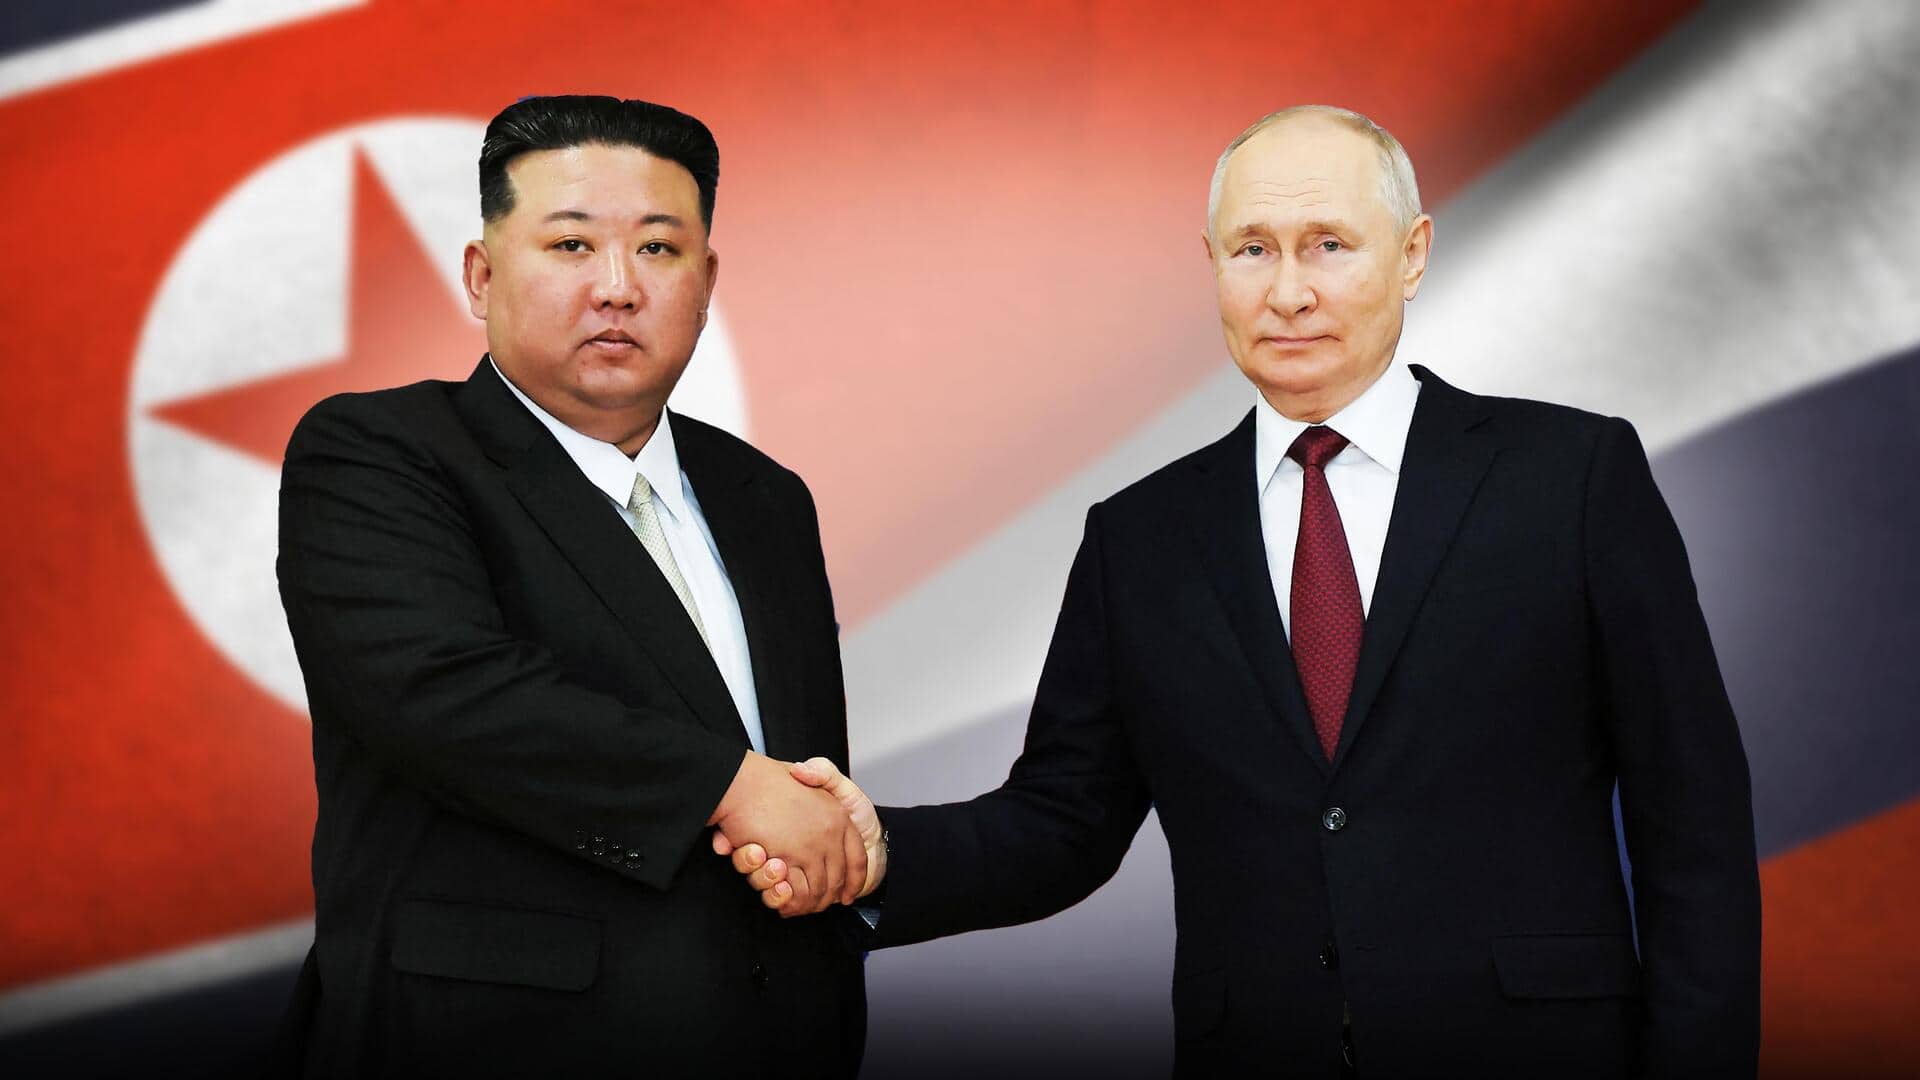 #NewsBytesExplainer: व्लादिमीर पुतिन की उत्तर कोरिया यात्रा पर क्यों हैं दुनियाभर की नजरें?